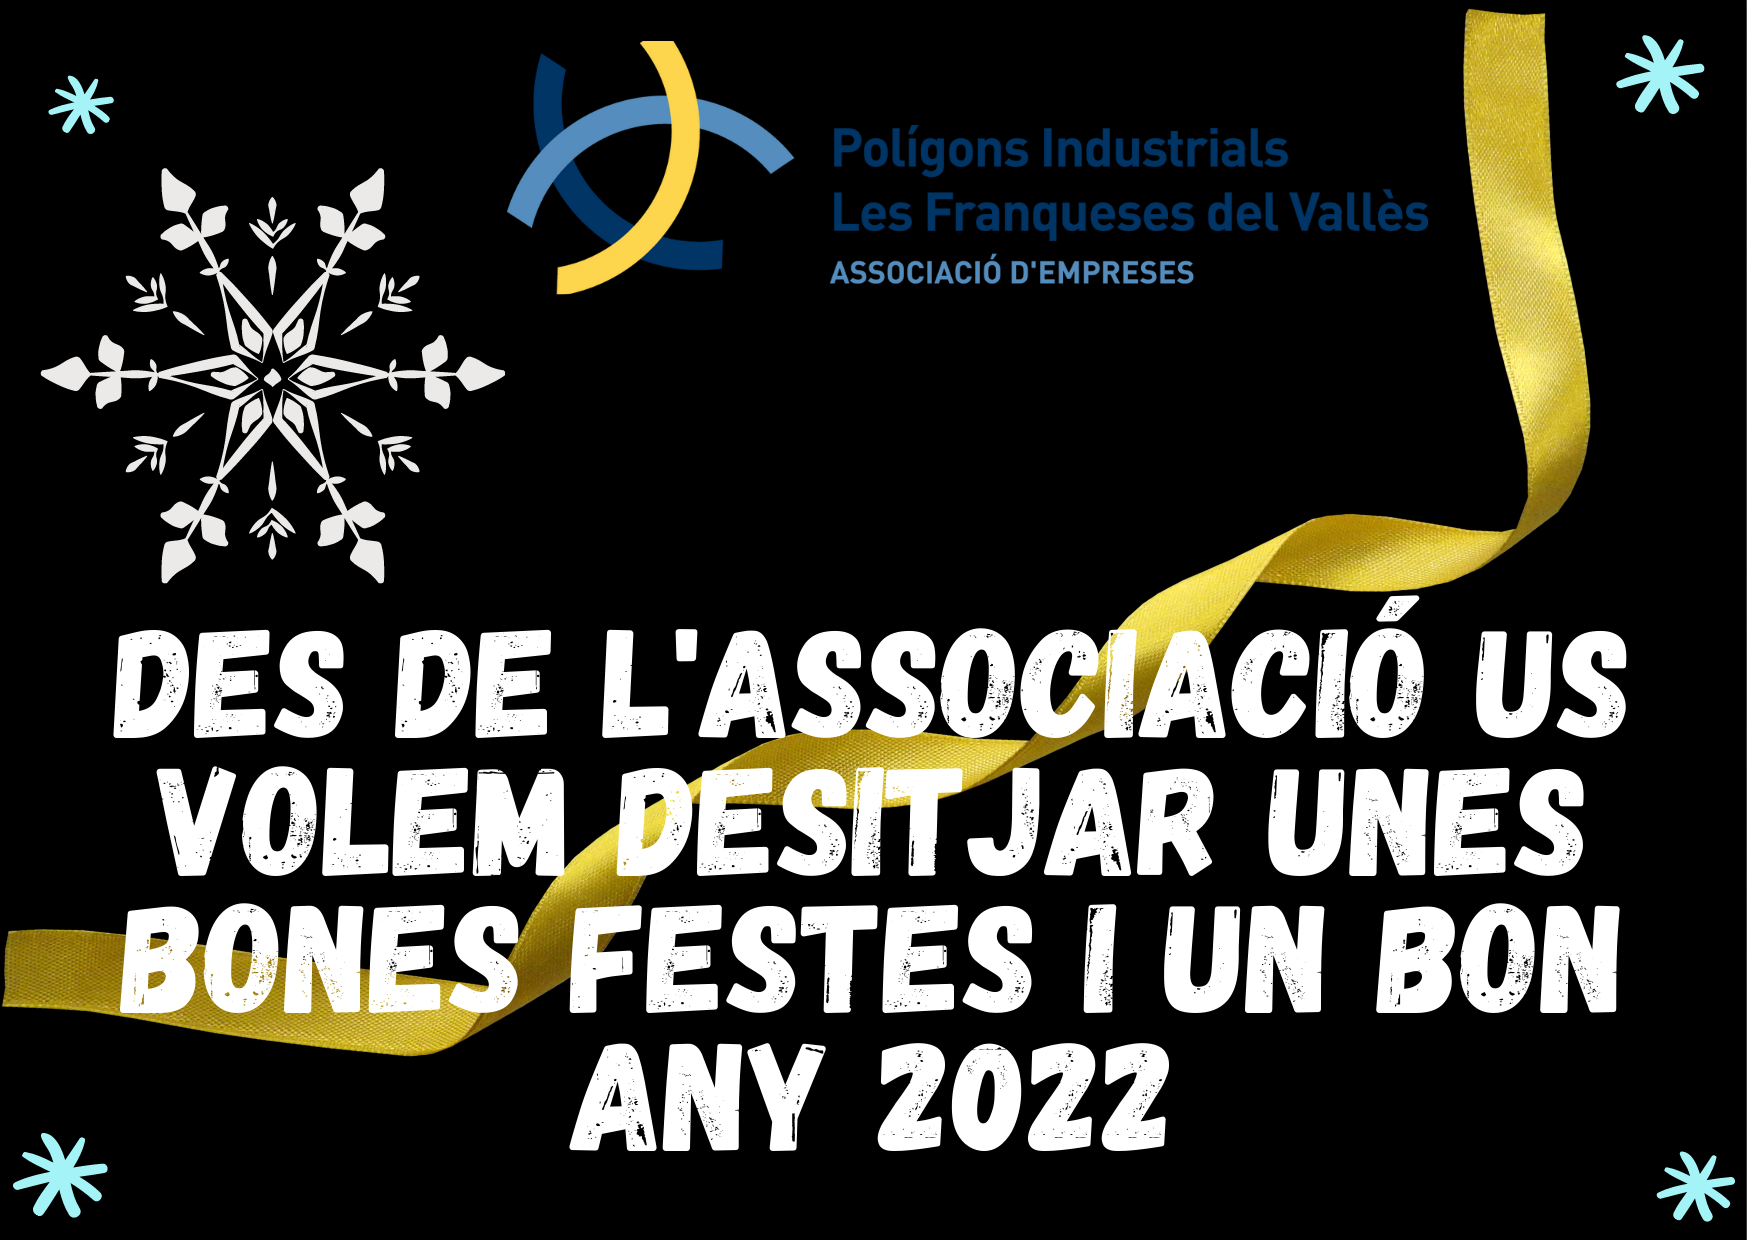 L'Associació us desitja unes bones festes i un bon any 2022!